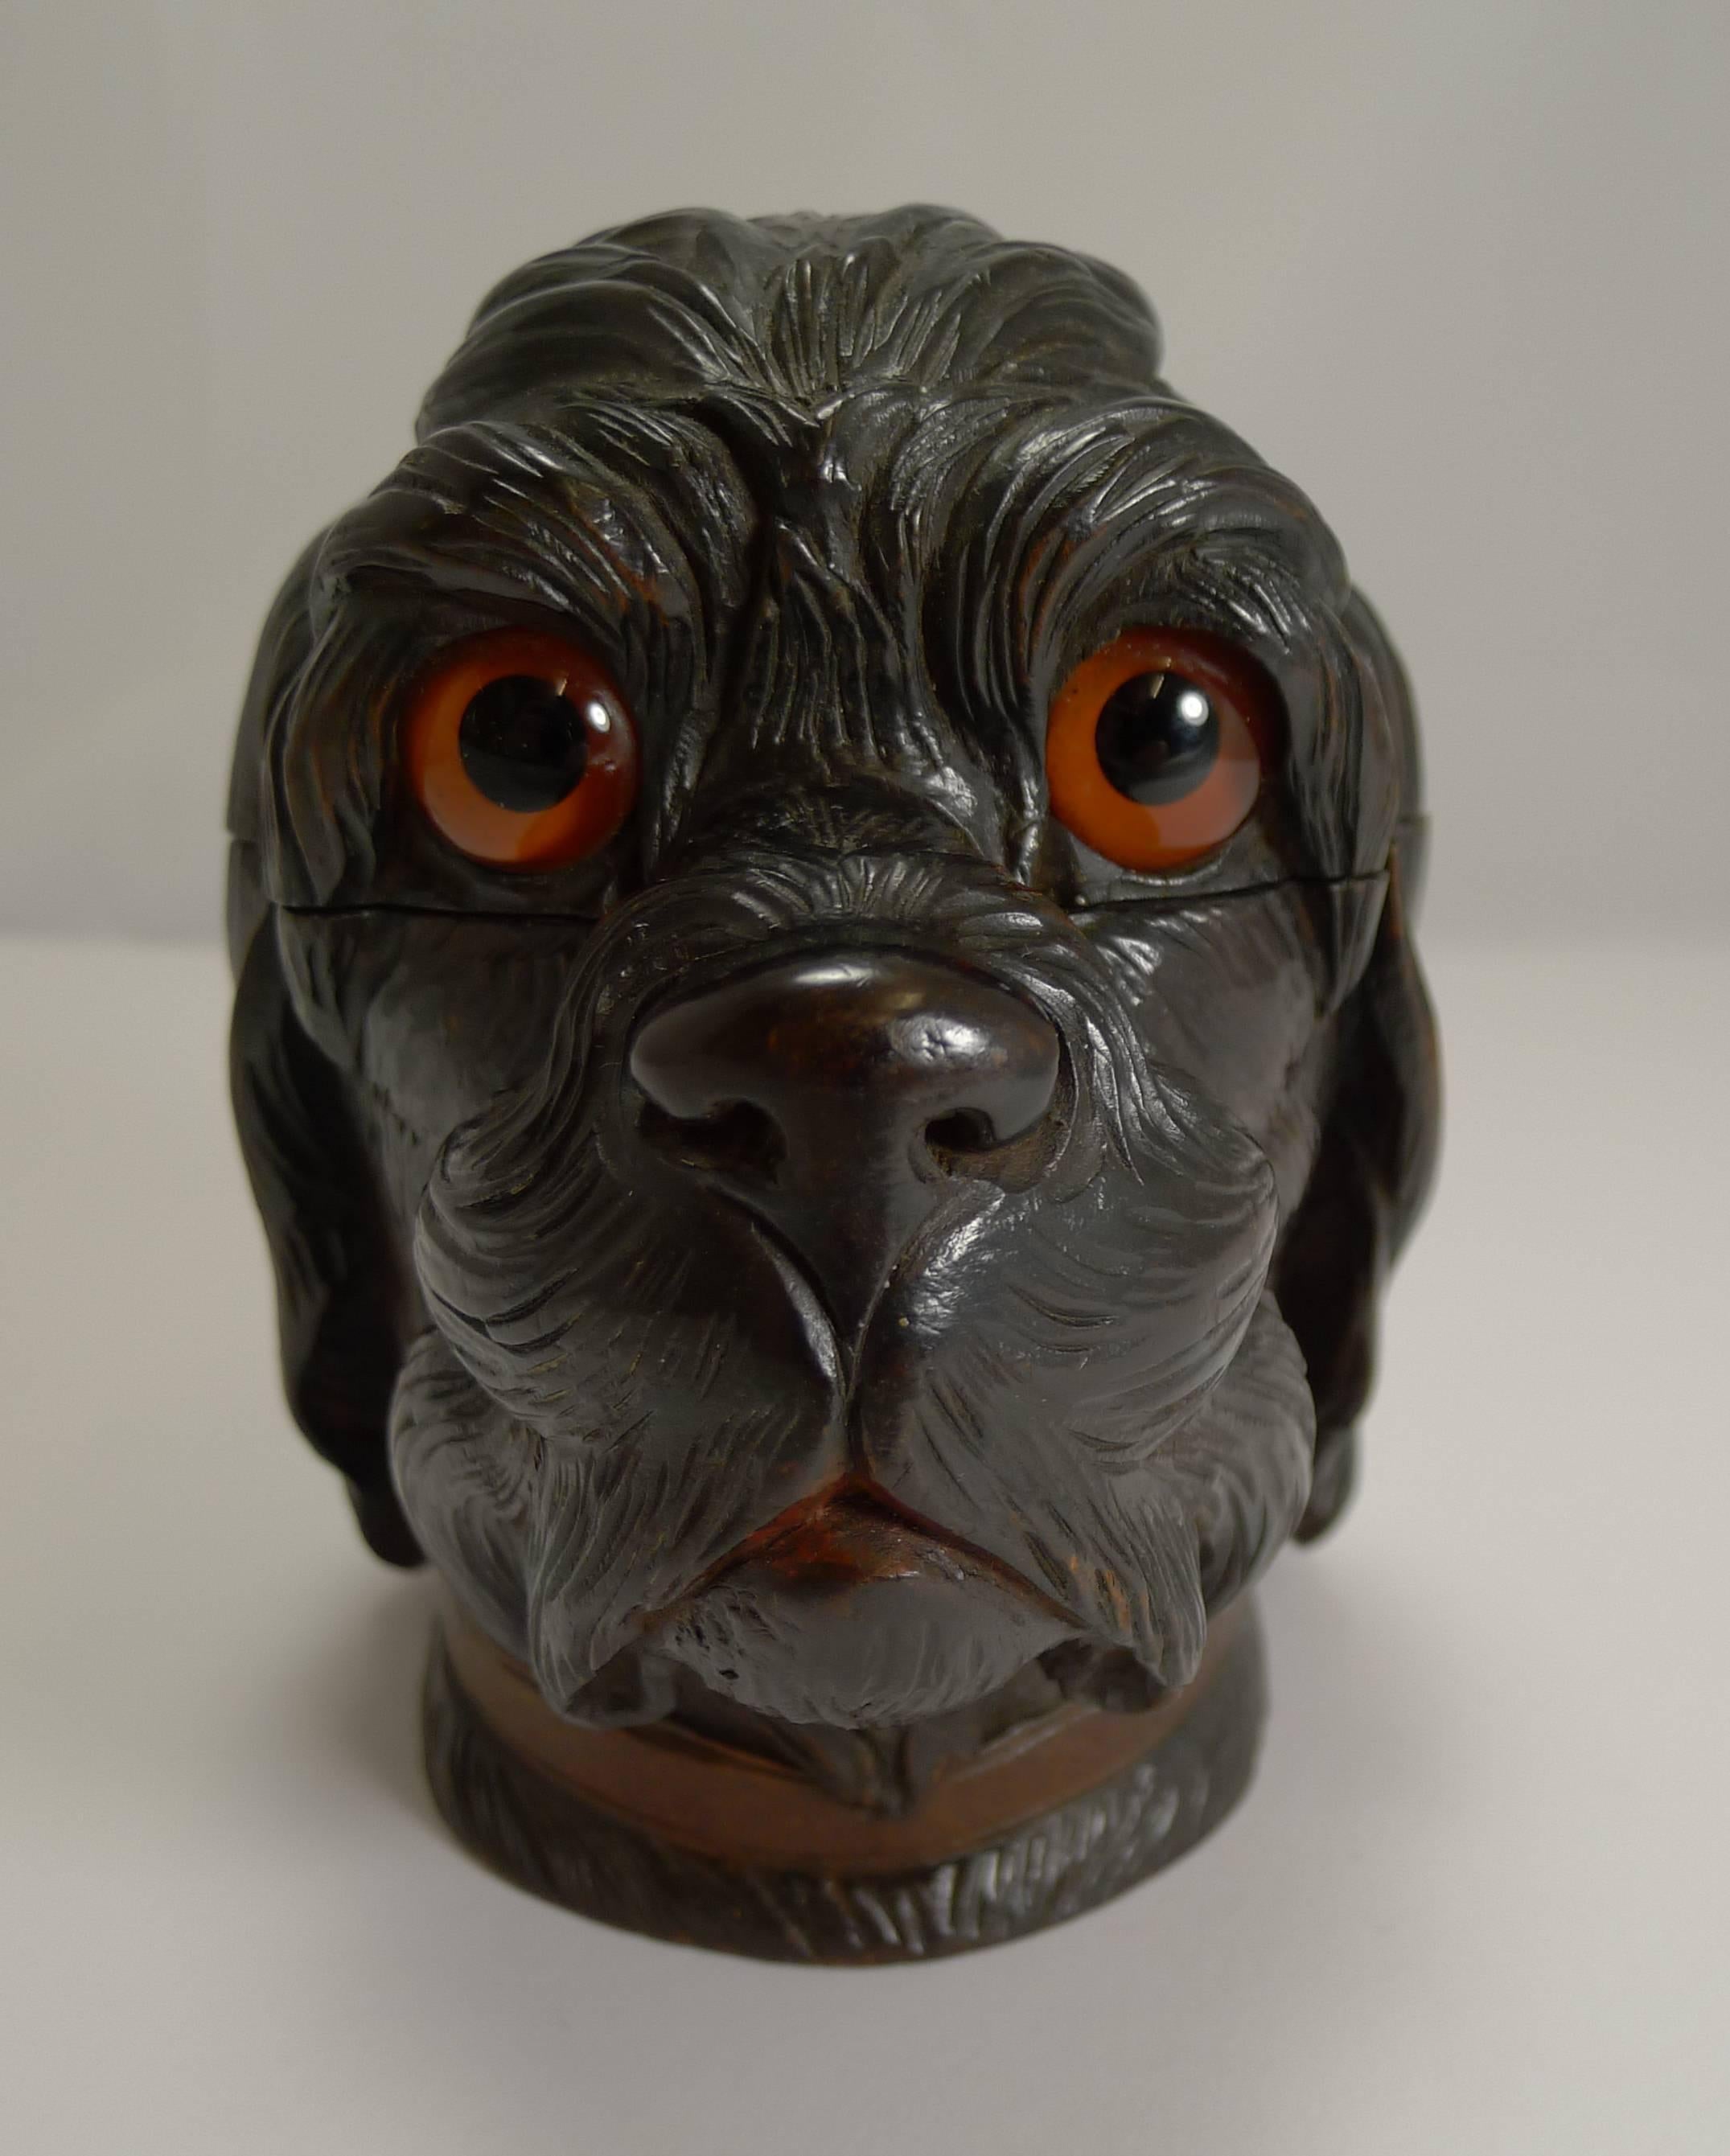 Un encrier figuratif superbement sculpté en Forêt Noire en forme de tête de chien, avec beaucoup de détails et conservant deux grands yeux en verre.

Le couvercle à charnière s'ouvre pour révéler une chambre à encre intérieure, ouverte à l'aide du